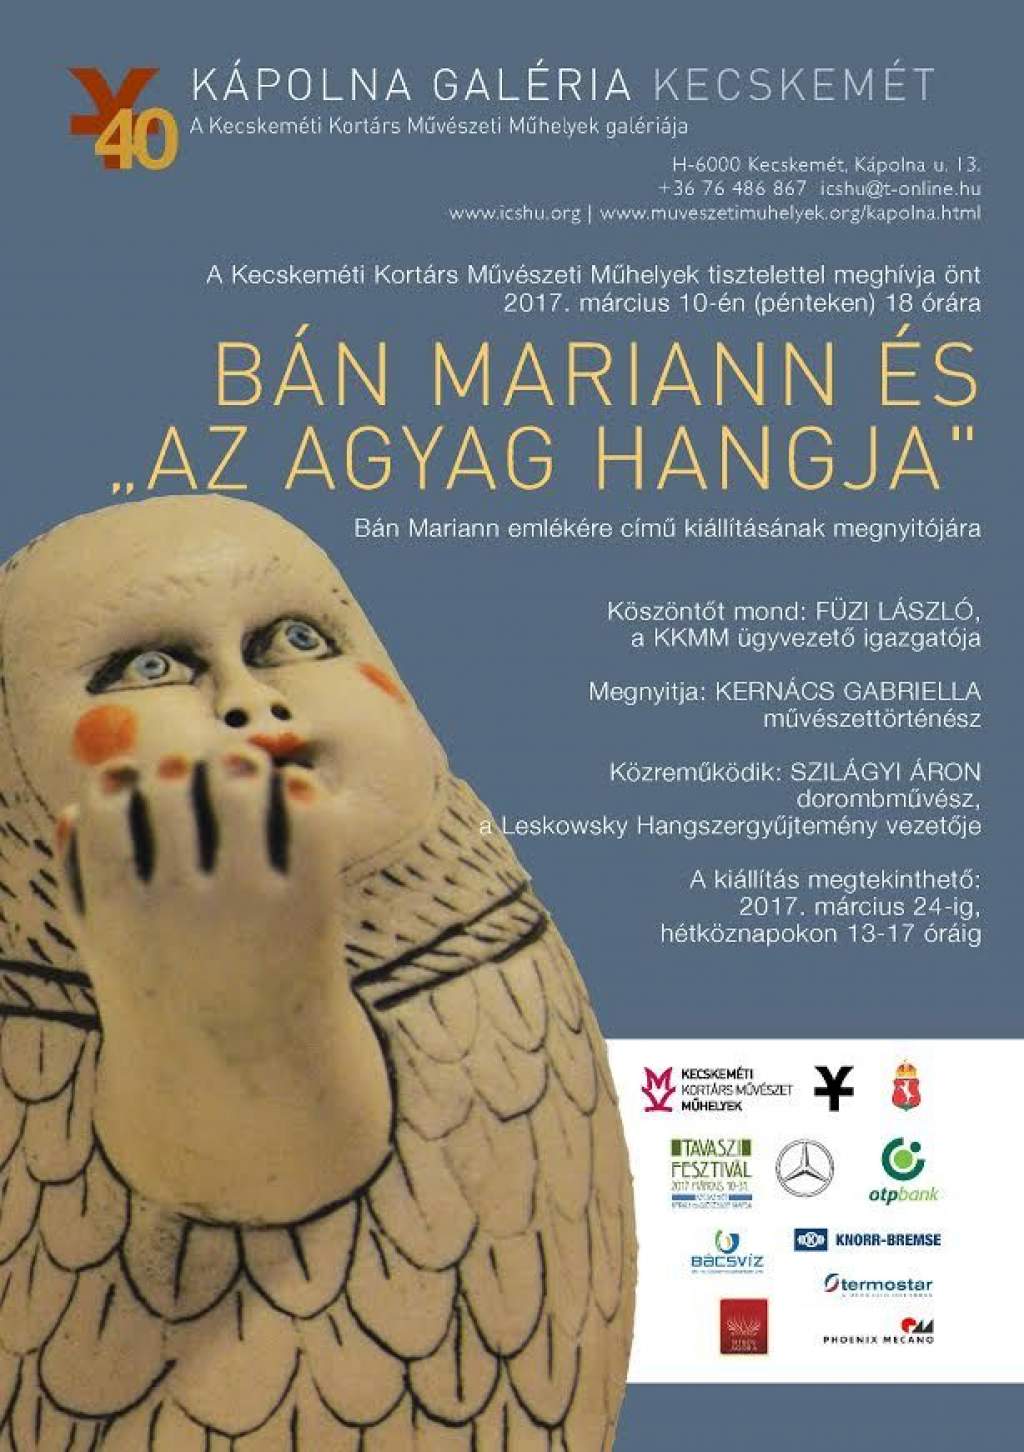 Bán Mariann és az „Agyag hangja" - Bán Mariann emlékére - kiállítás a Kápolna Galériában